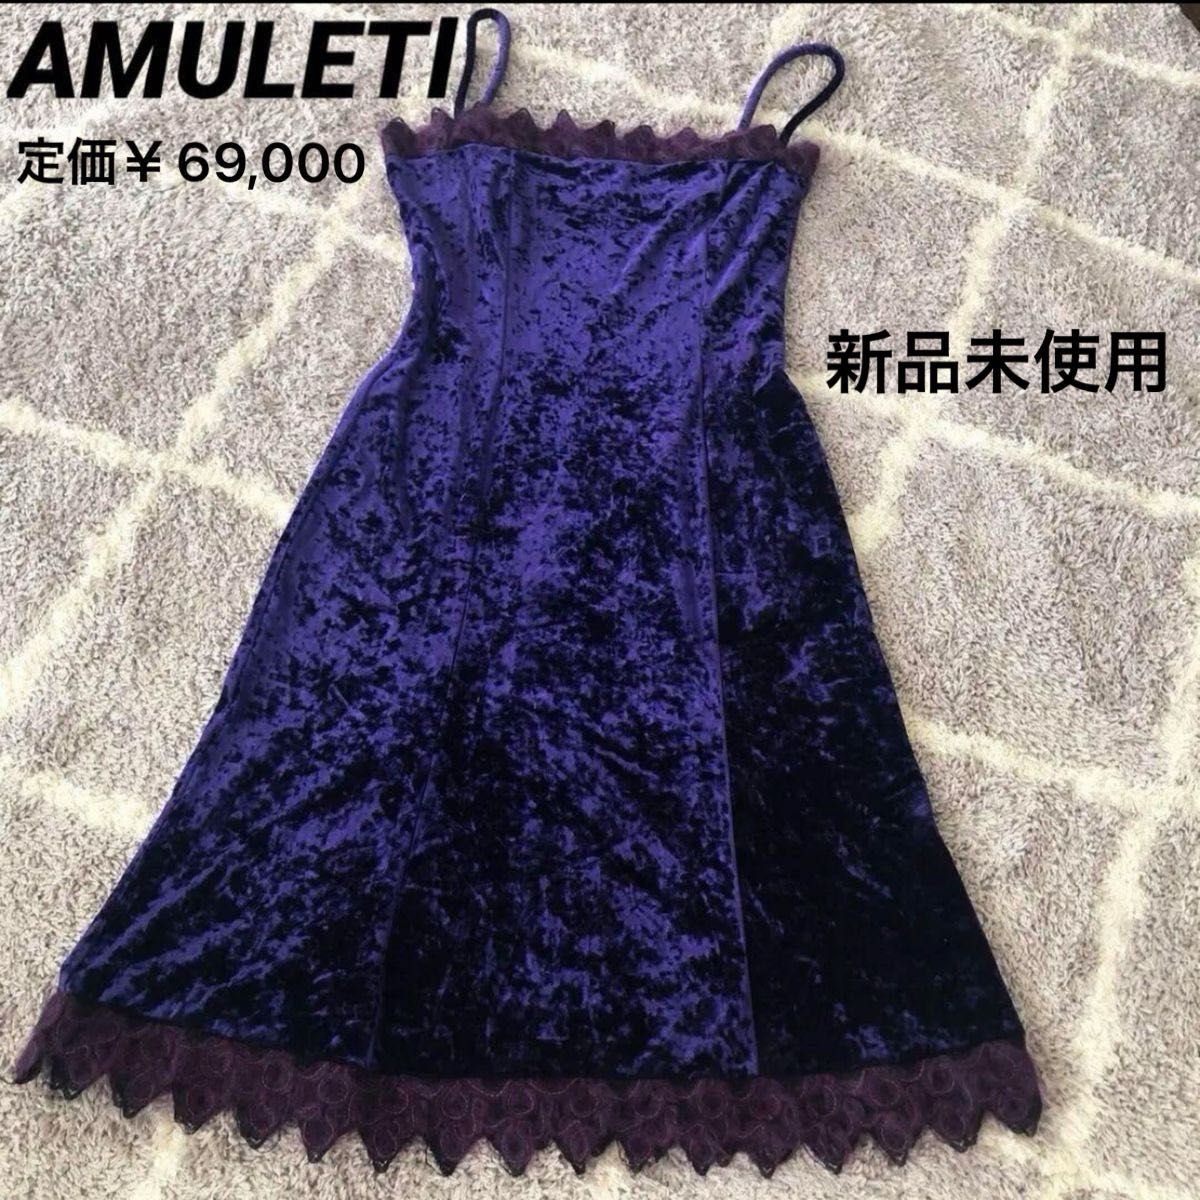 未使用 アムレッティ高級 イタリアブランド  パーティードレス  ワンピース   キャバドレス  ナイトドレス